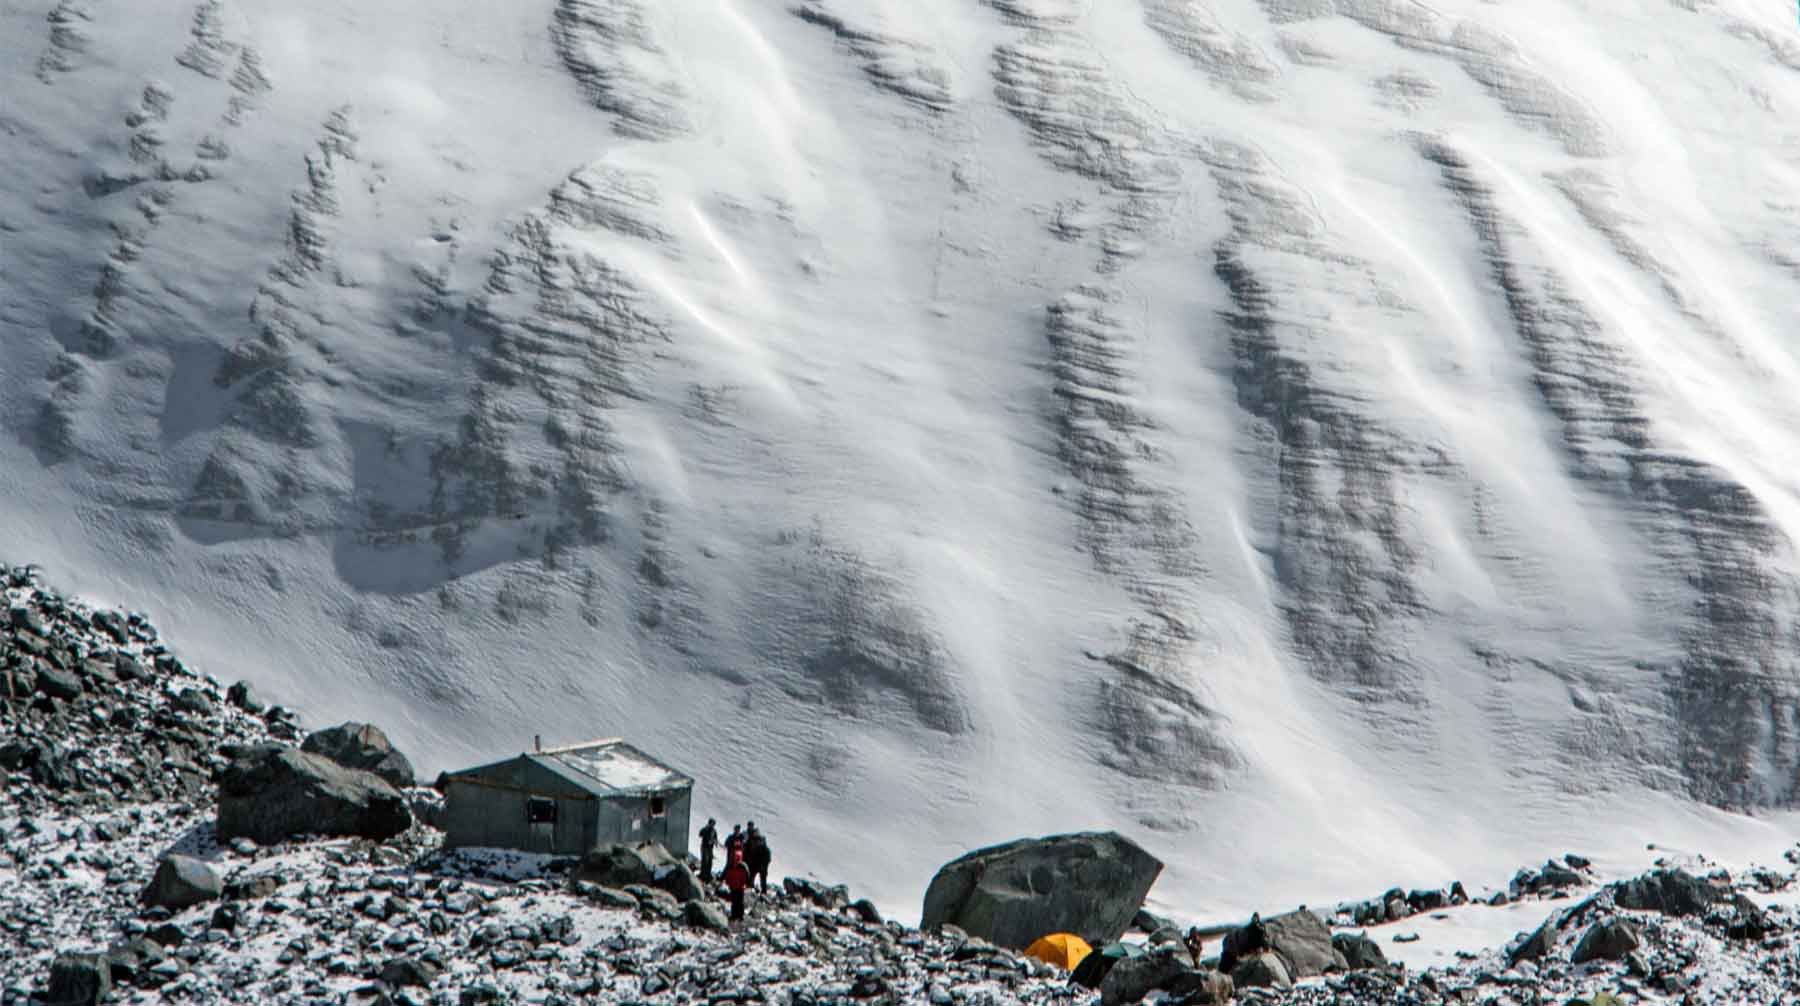 Dailystorm - Группа туристов попала под лавину на Алтае, погибли семь человек